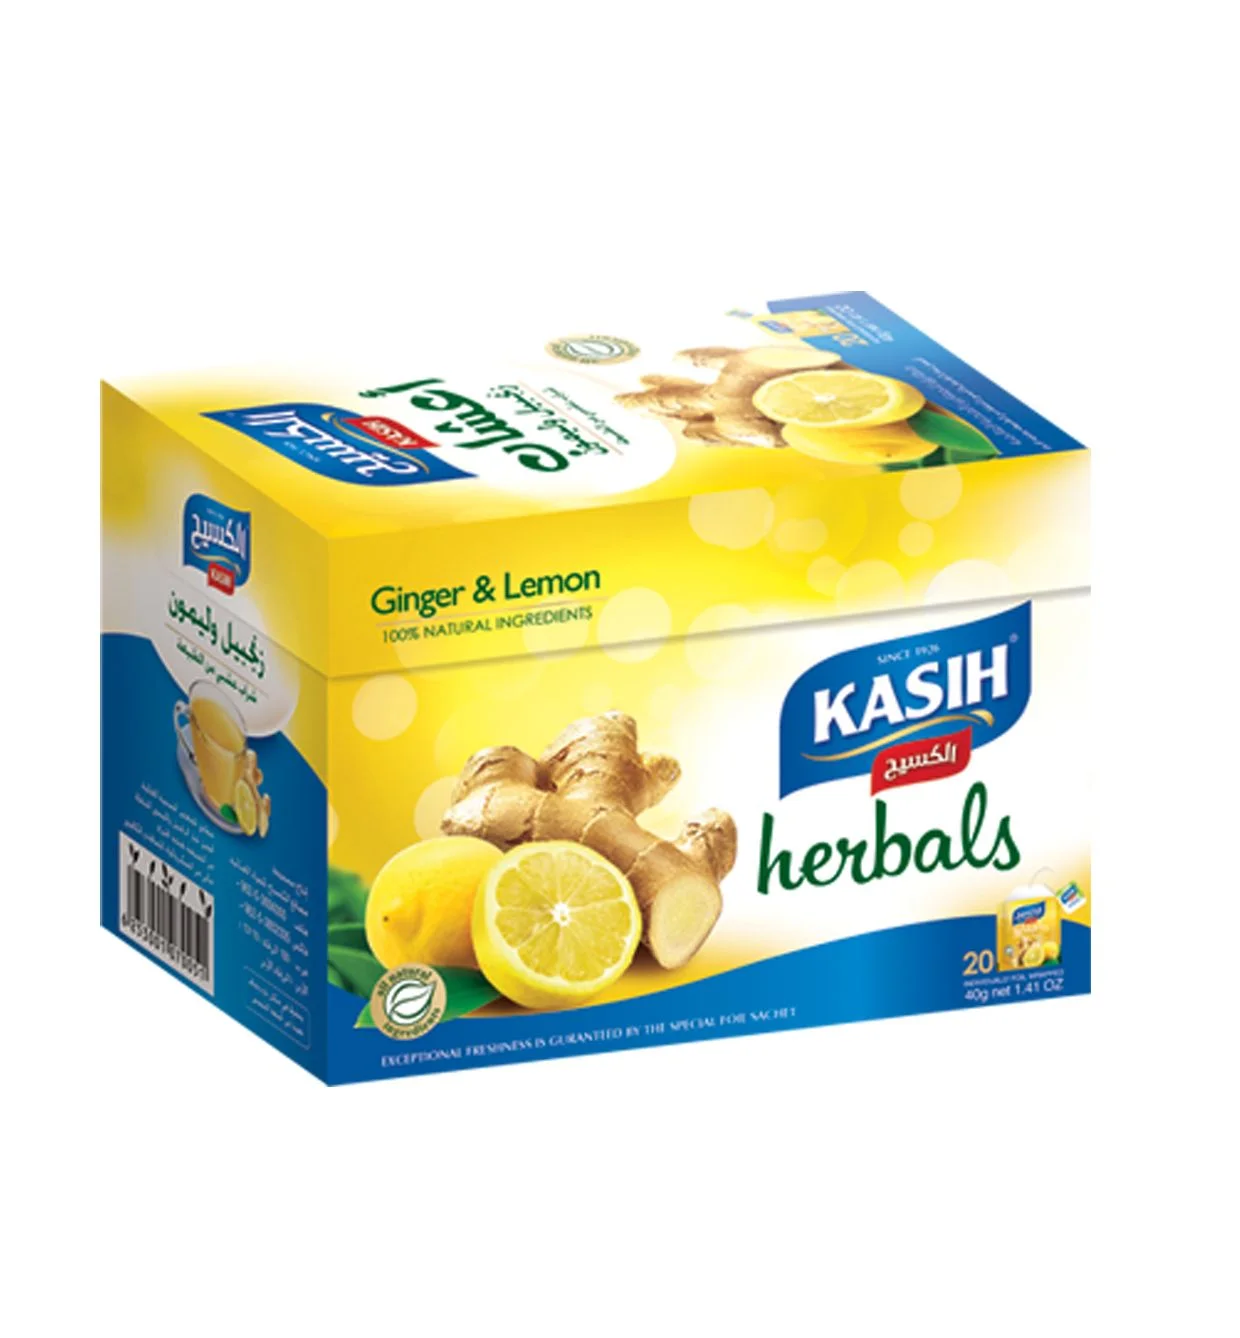 KASIH Herbals